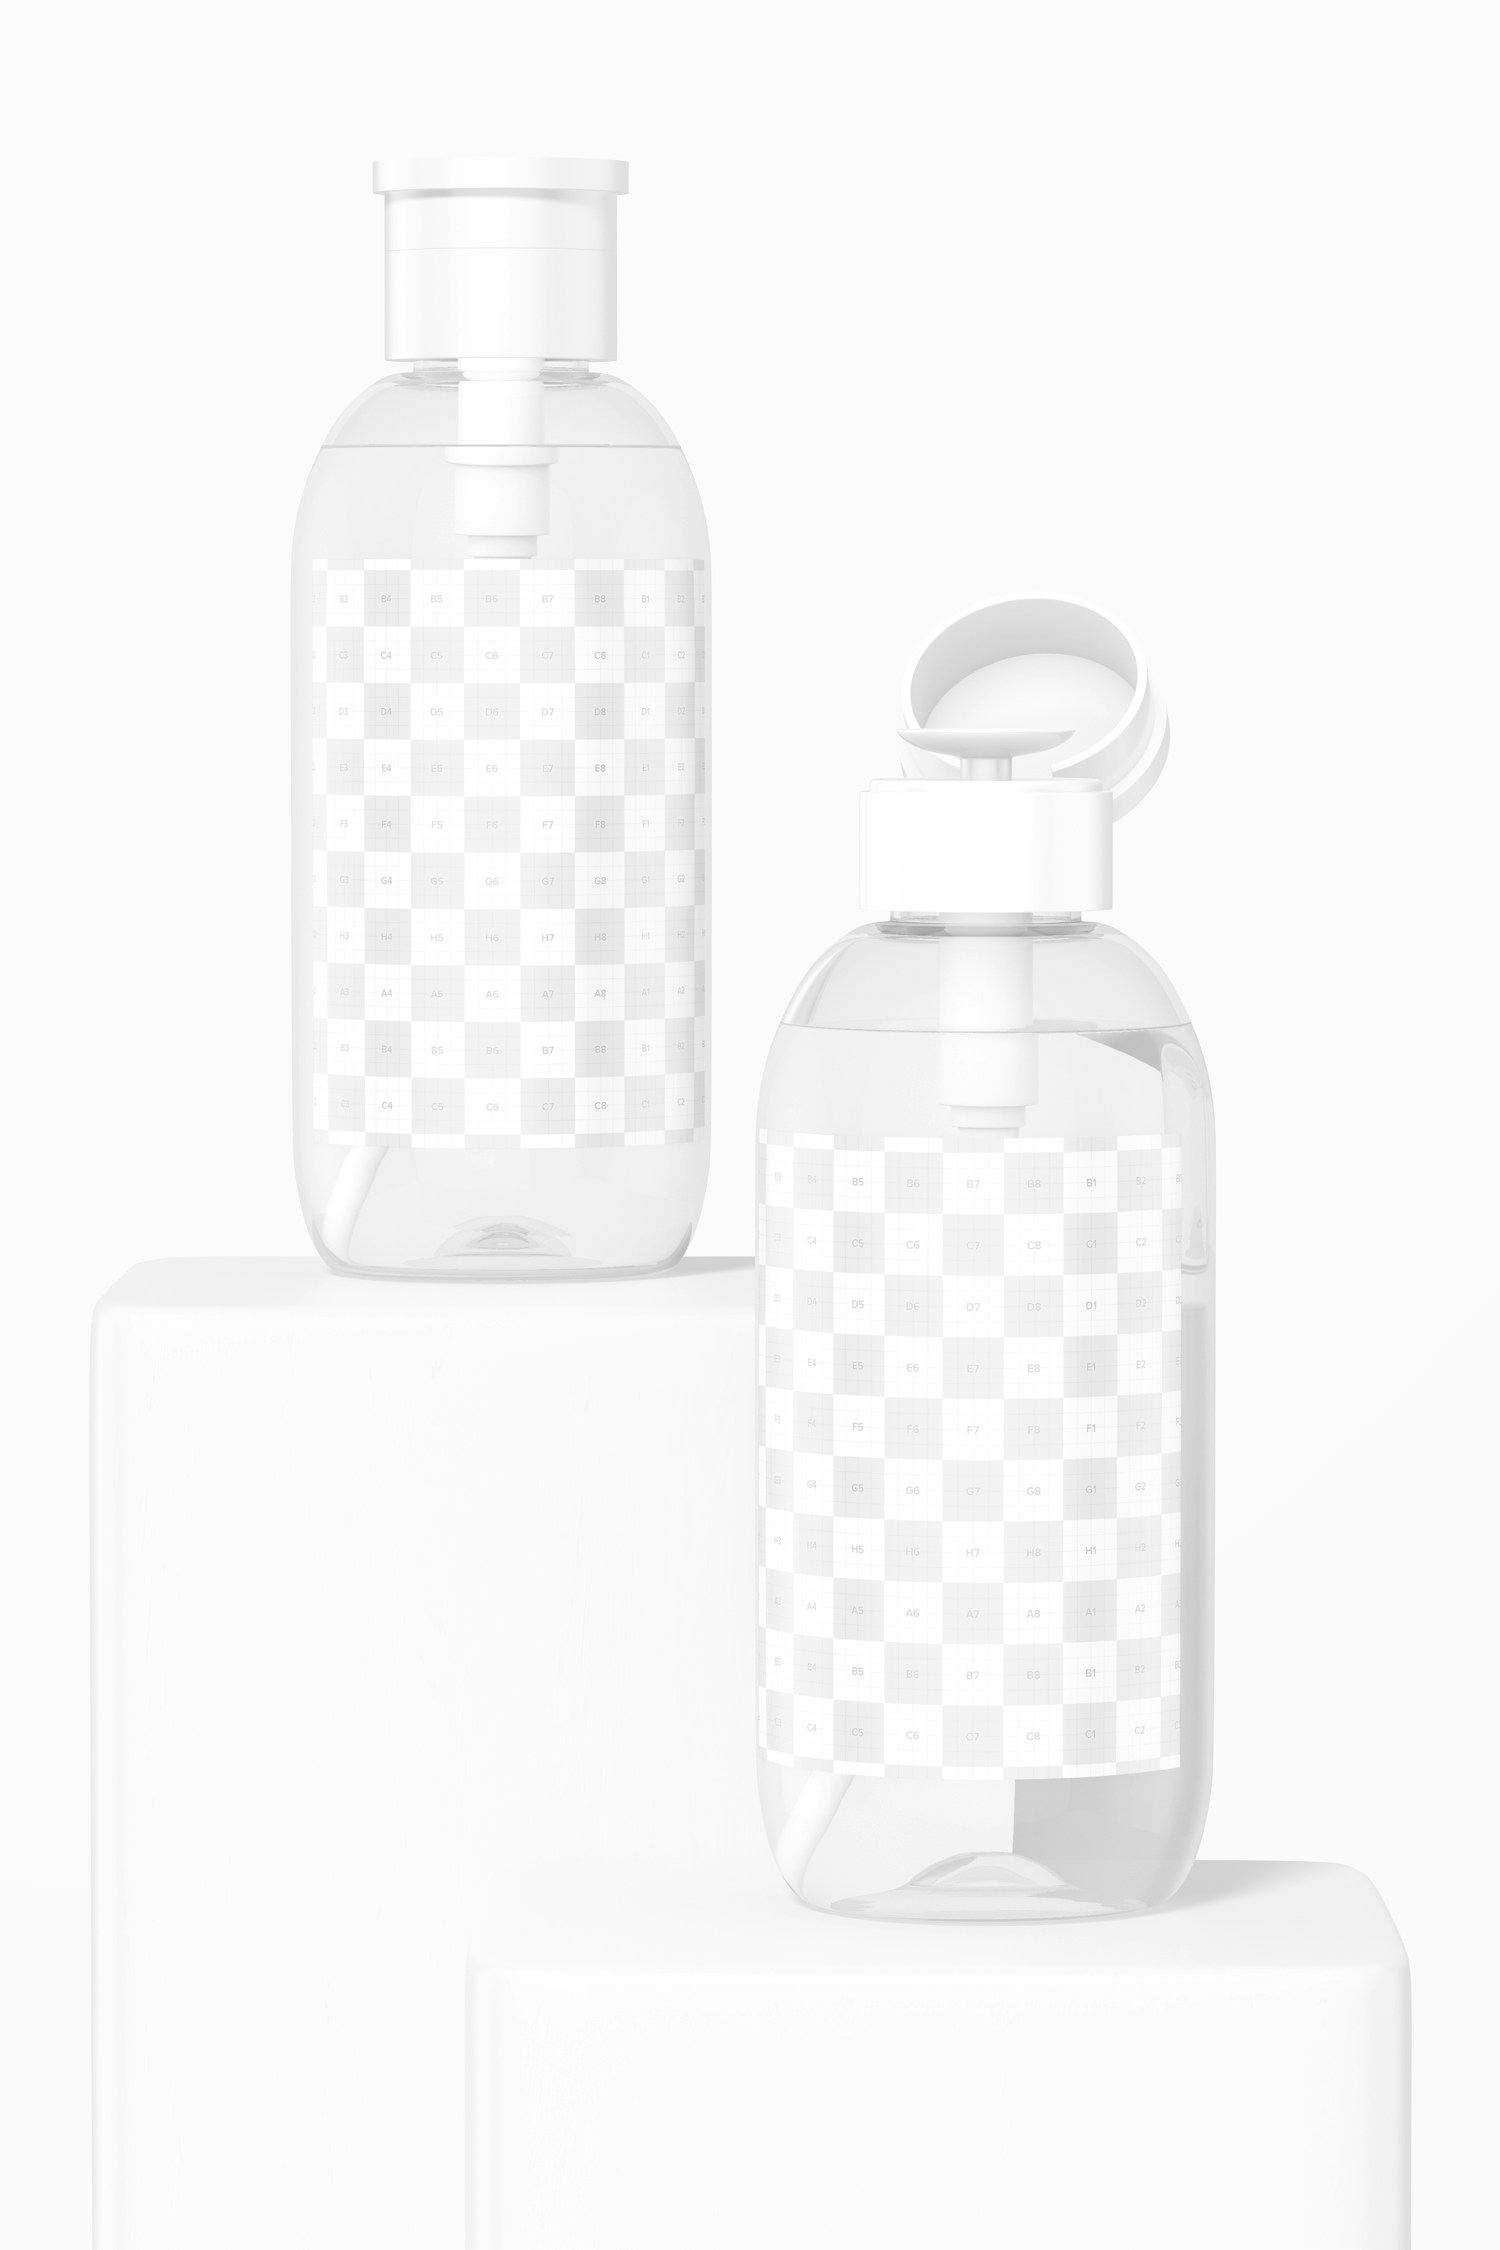 Micellar Water Bottles on Podiums Mockup